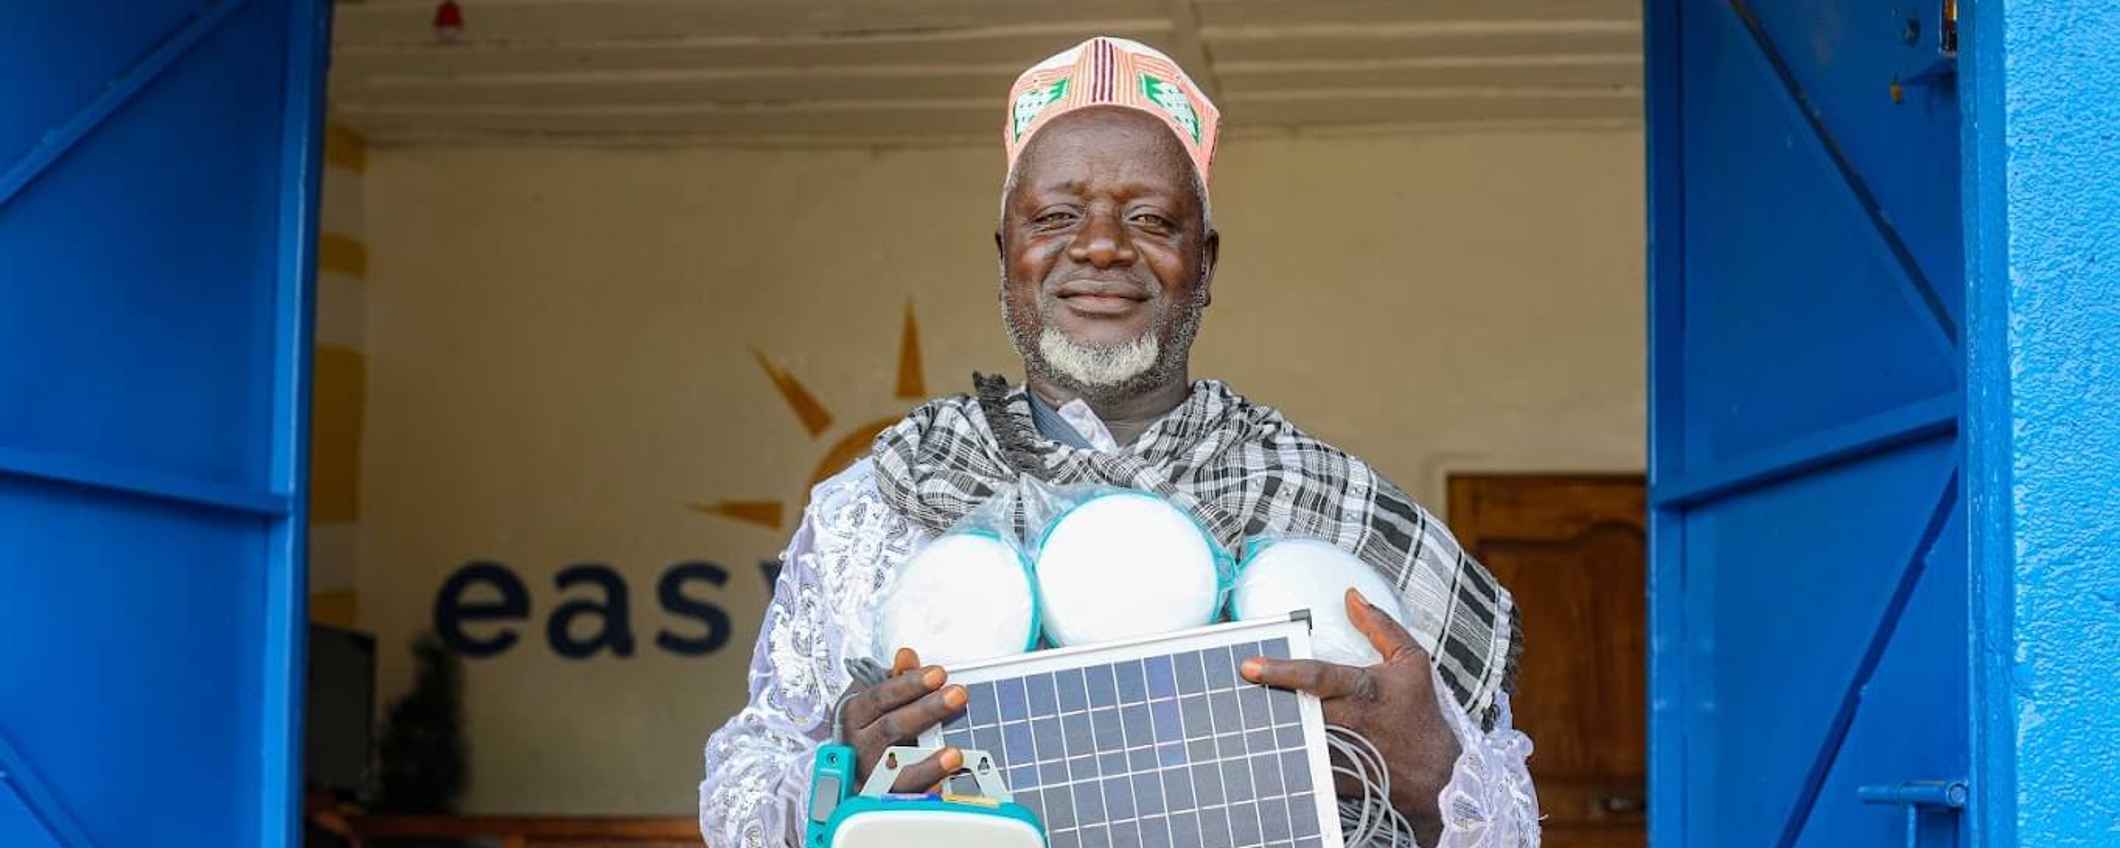 Easy Solar in Sierra Leone